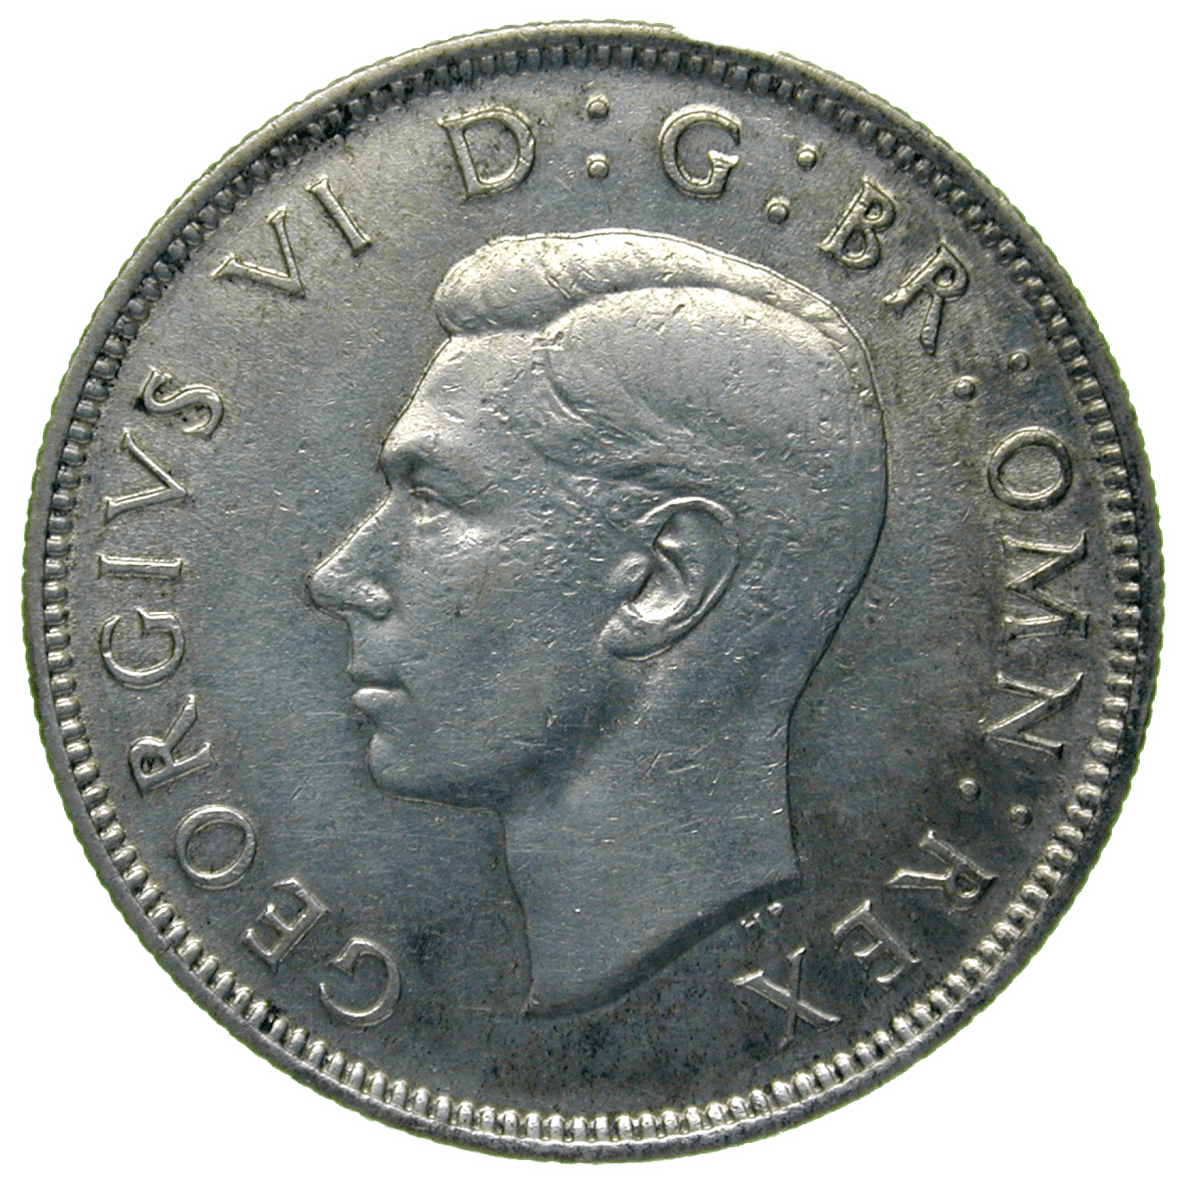 Vereinigtes Königreich Grossbritannien, Georg VI., Florin 1946 (obverse)